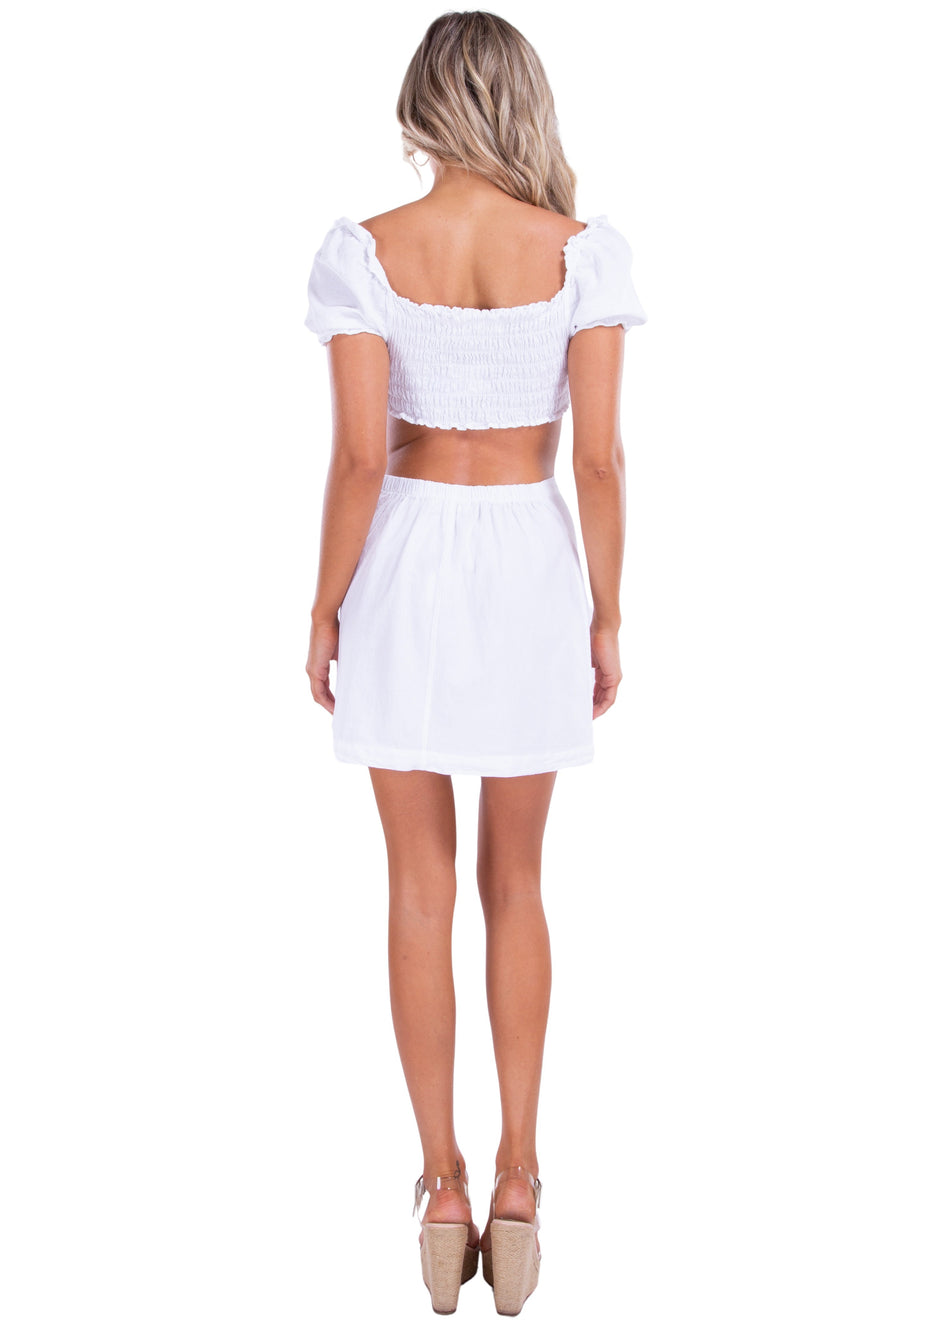 NW1465 - White Cotton Skirt